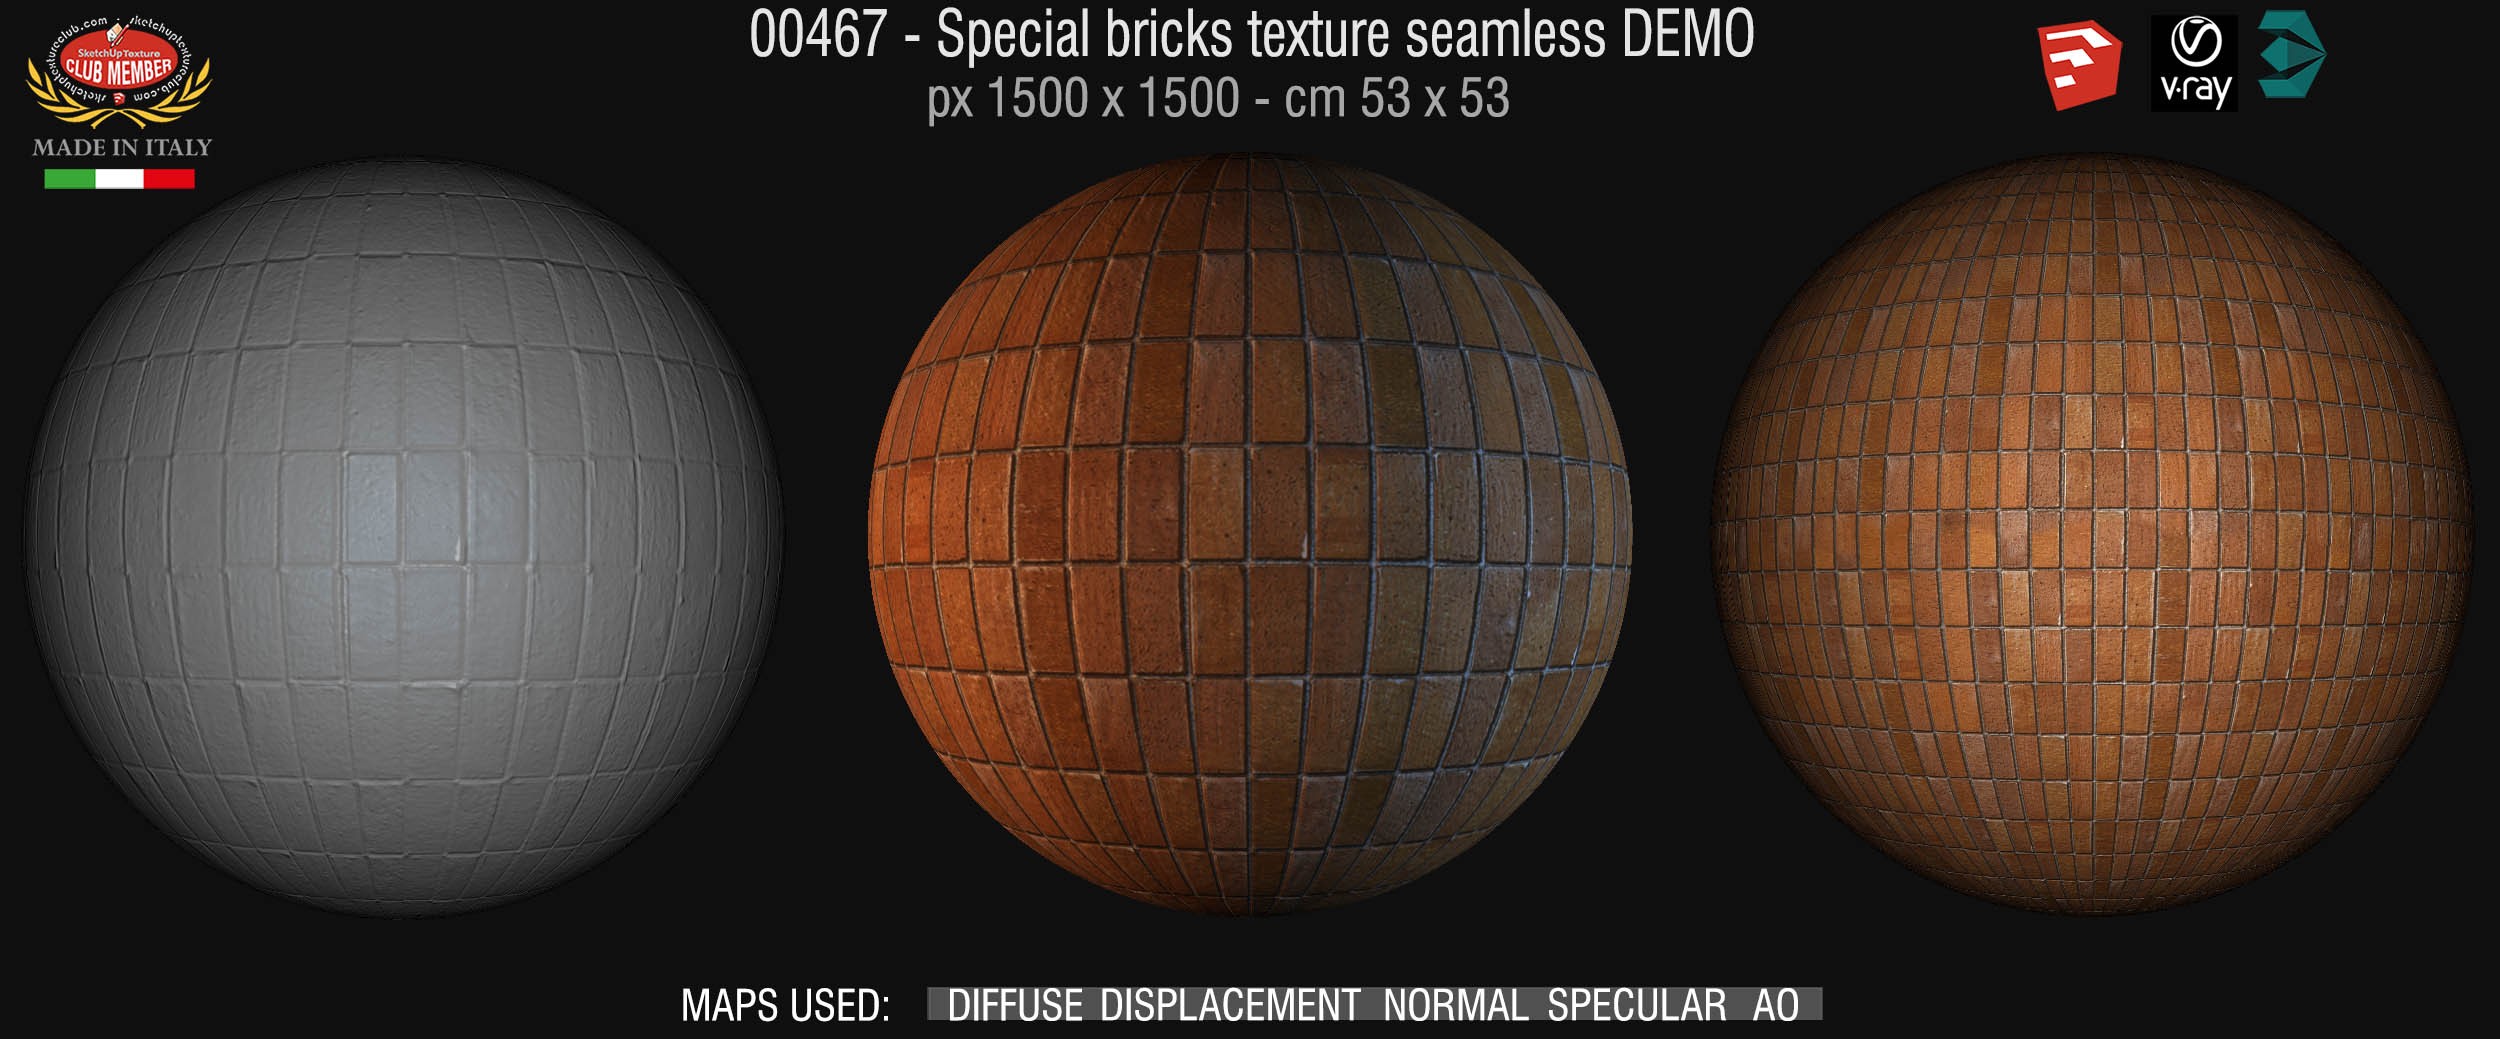 00467 Special bricks texture seamless + maps DEMO